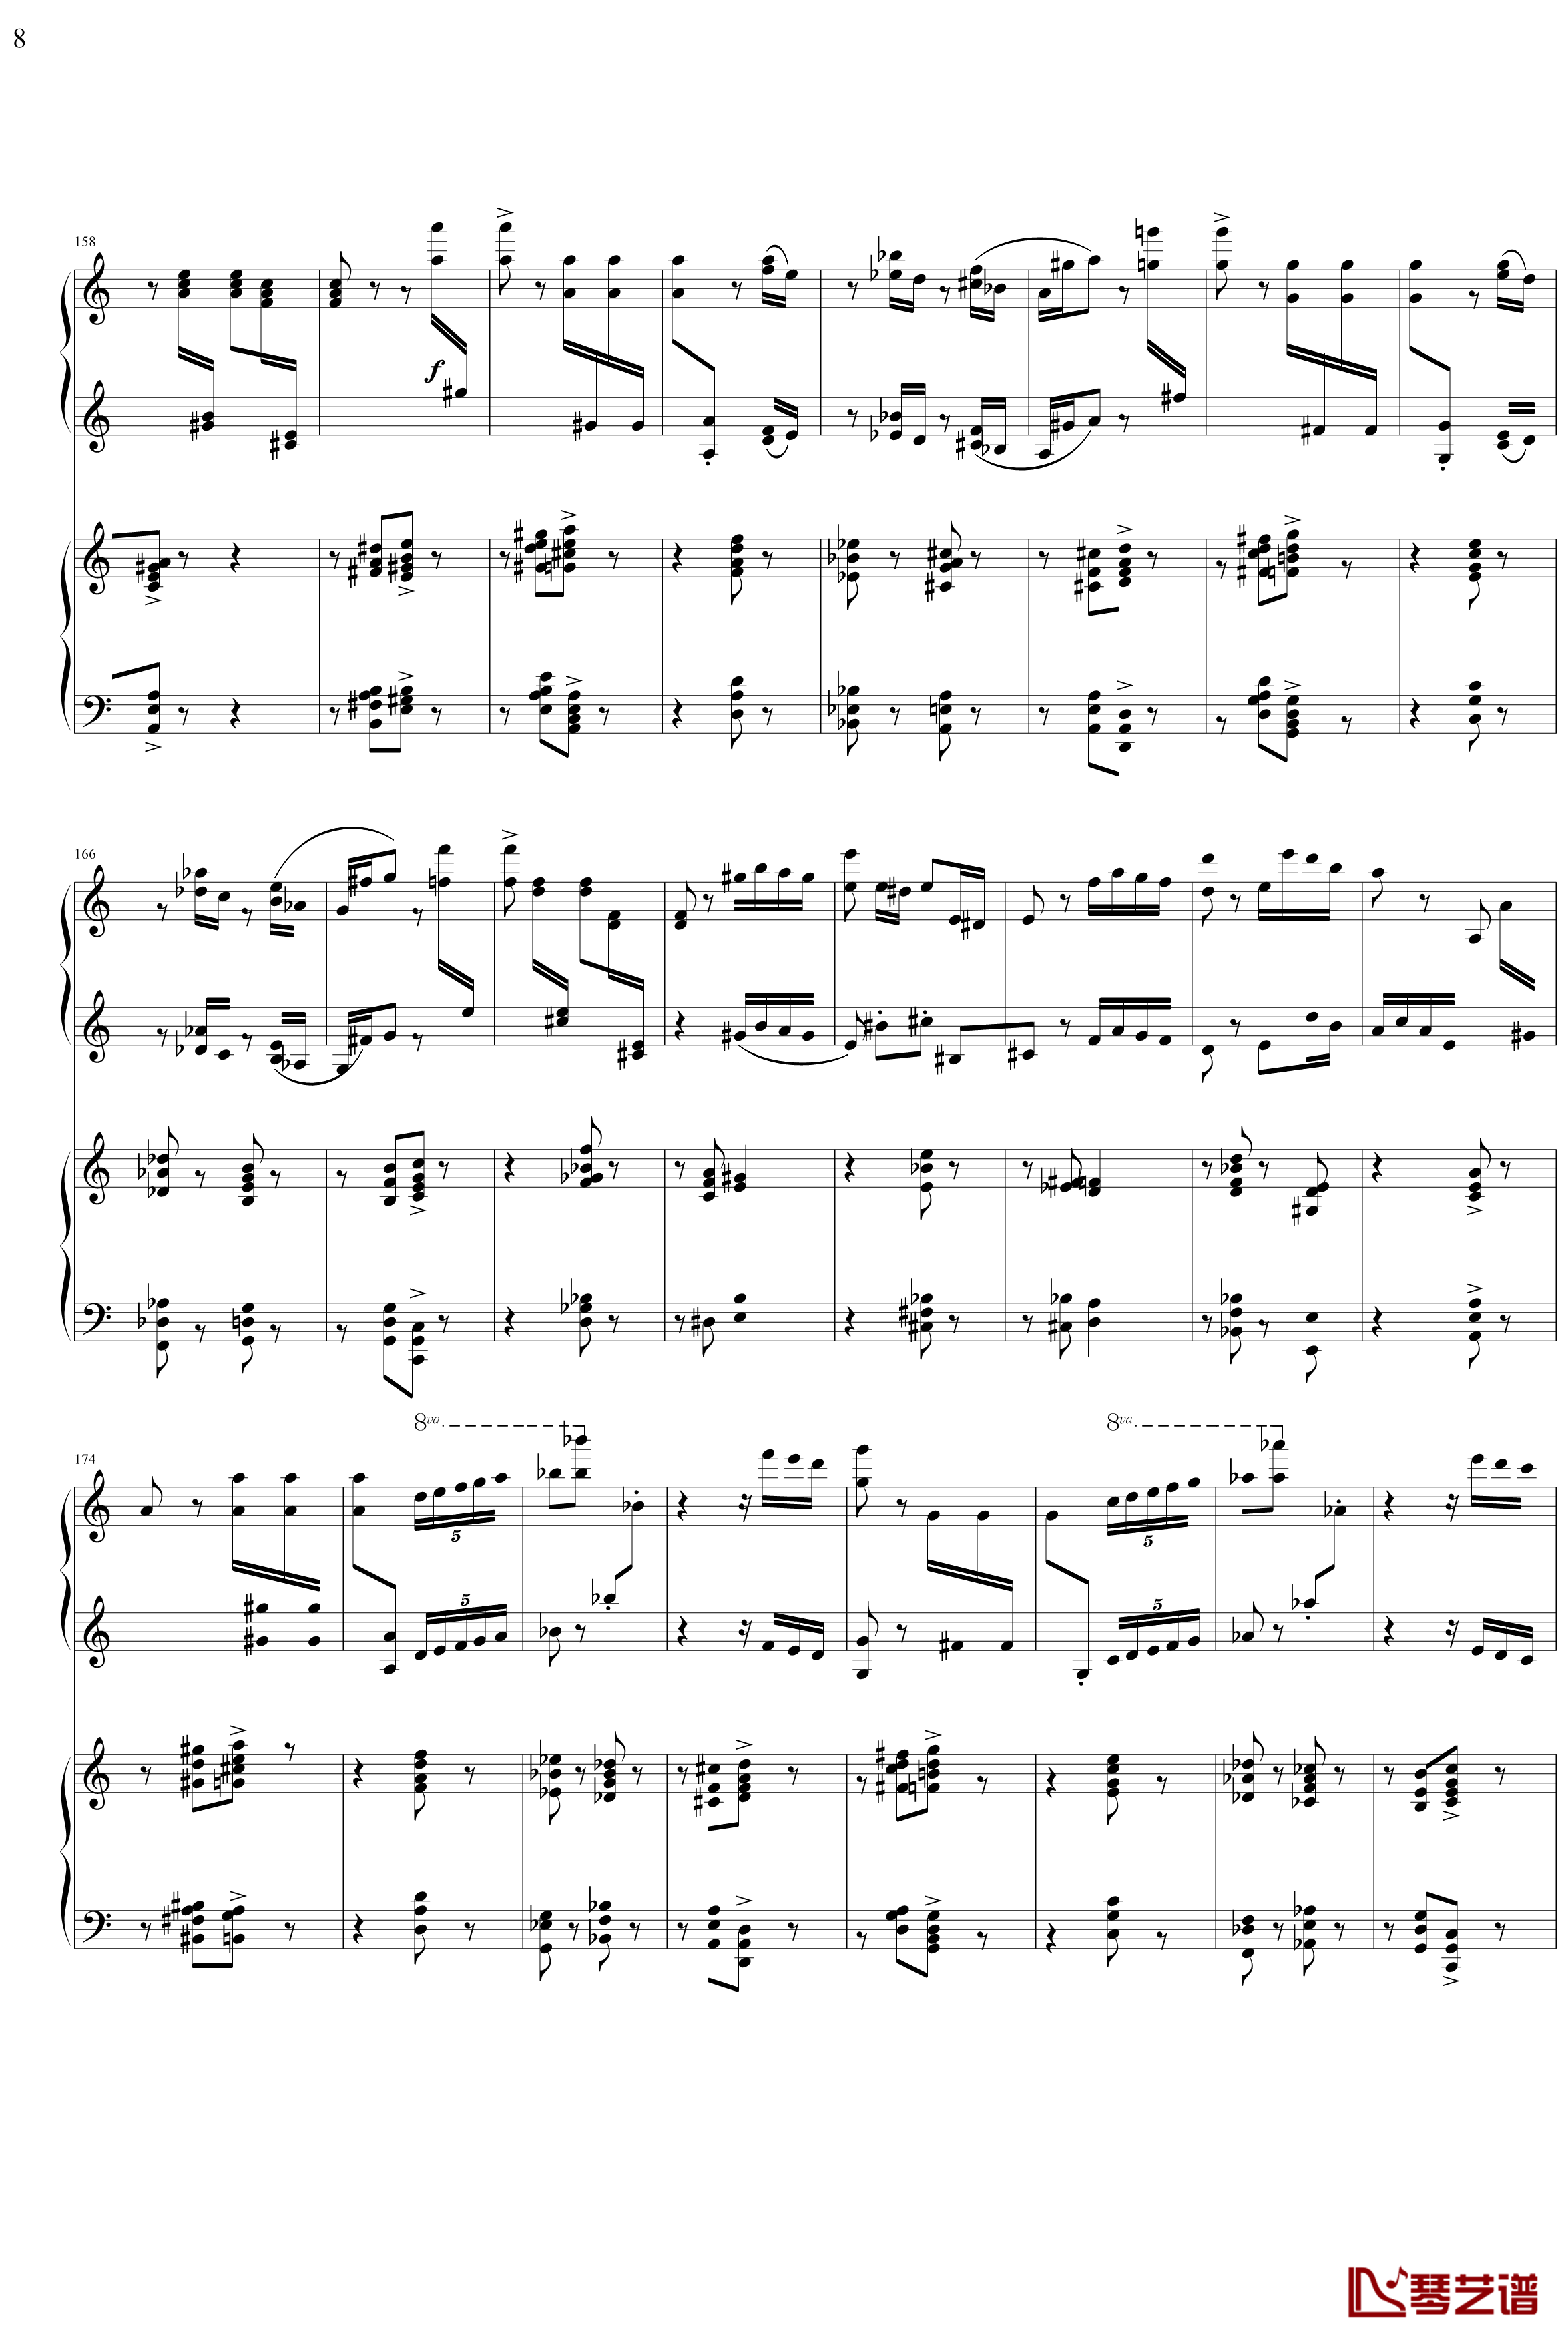 帕格尼主题狂想曲钢琴谱-1~10变奏-拉赫马尼若夫8